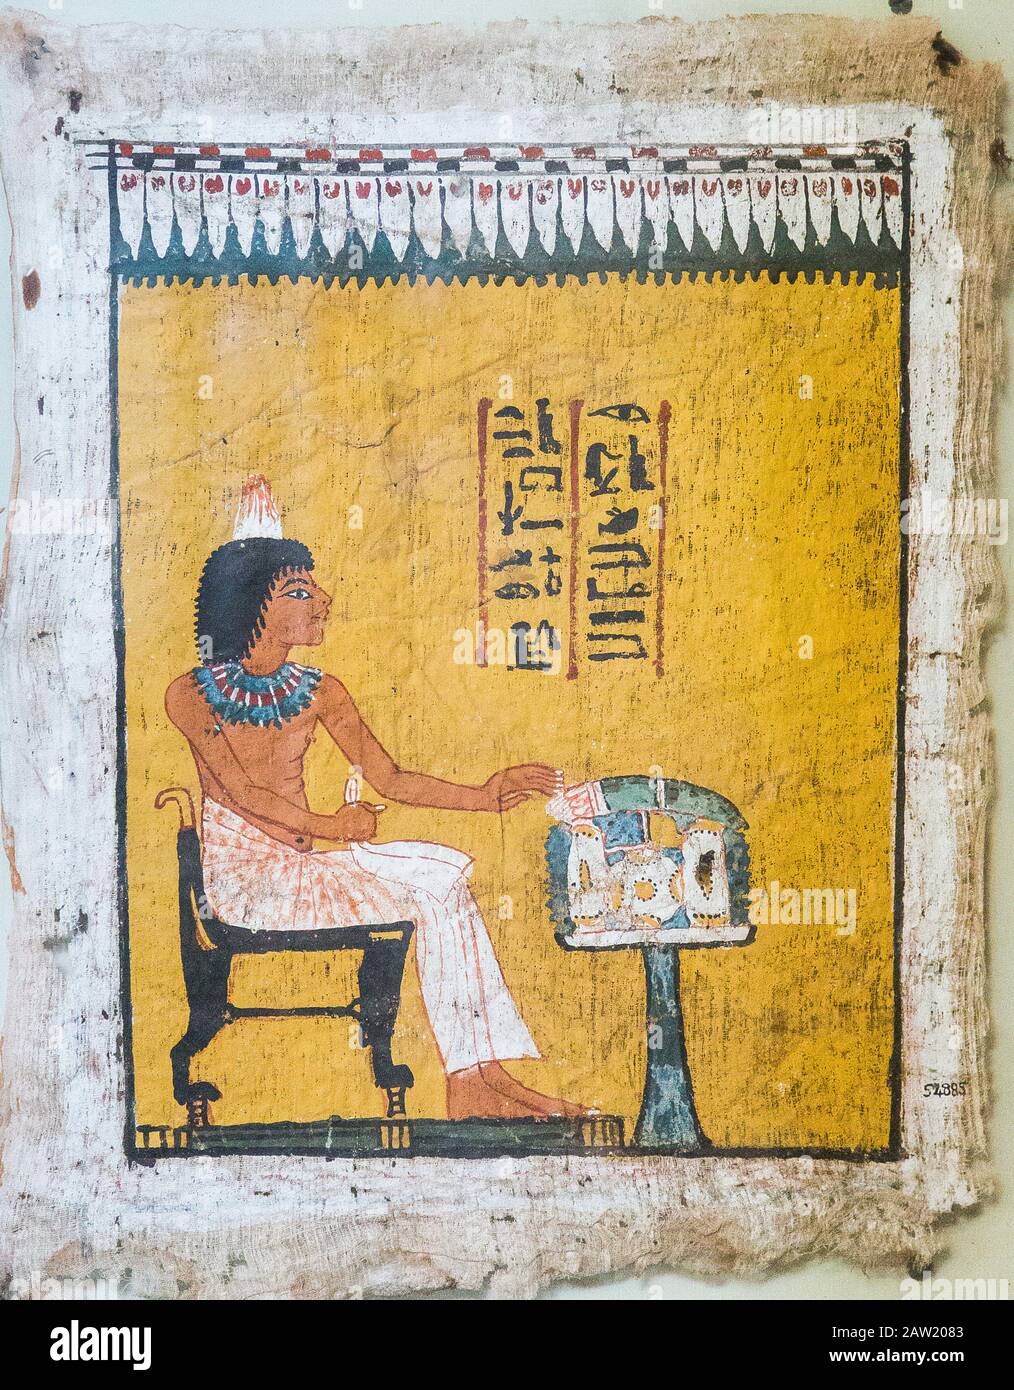 Egipto, el Cairo, el Museo Egipcio, un lino pintado muy raro, a veces llamado pañuelo pintado. Foto de stock